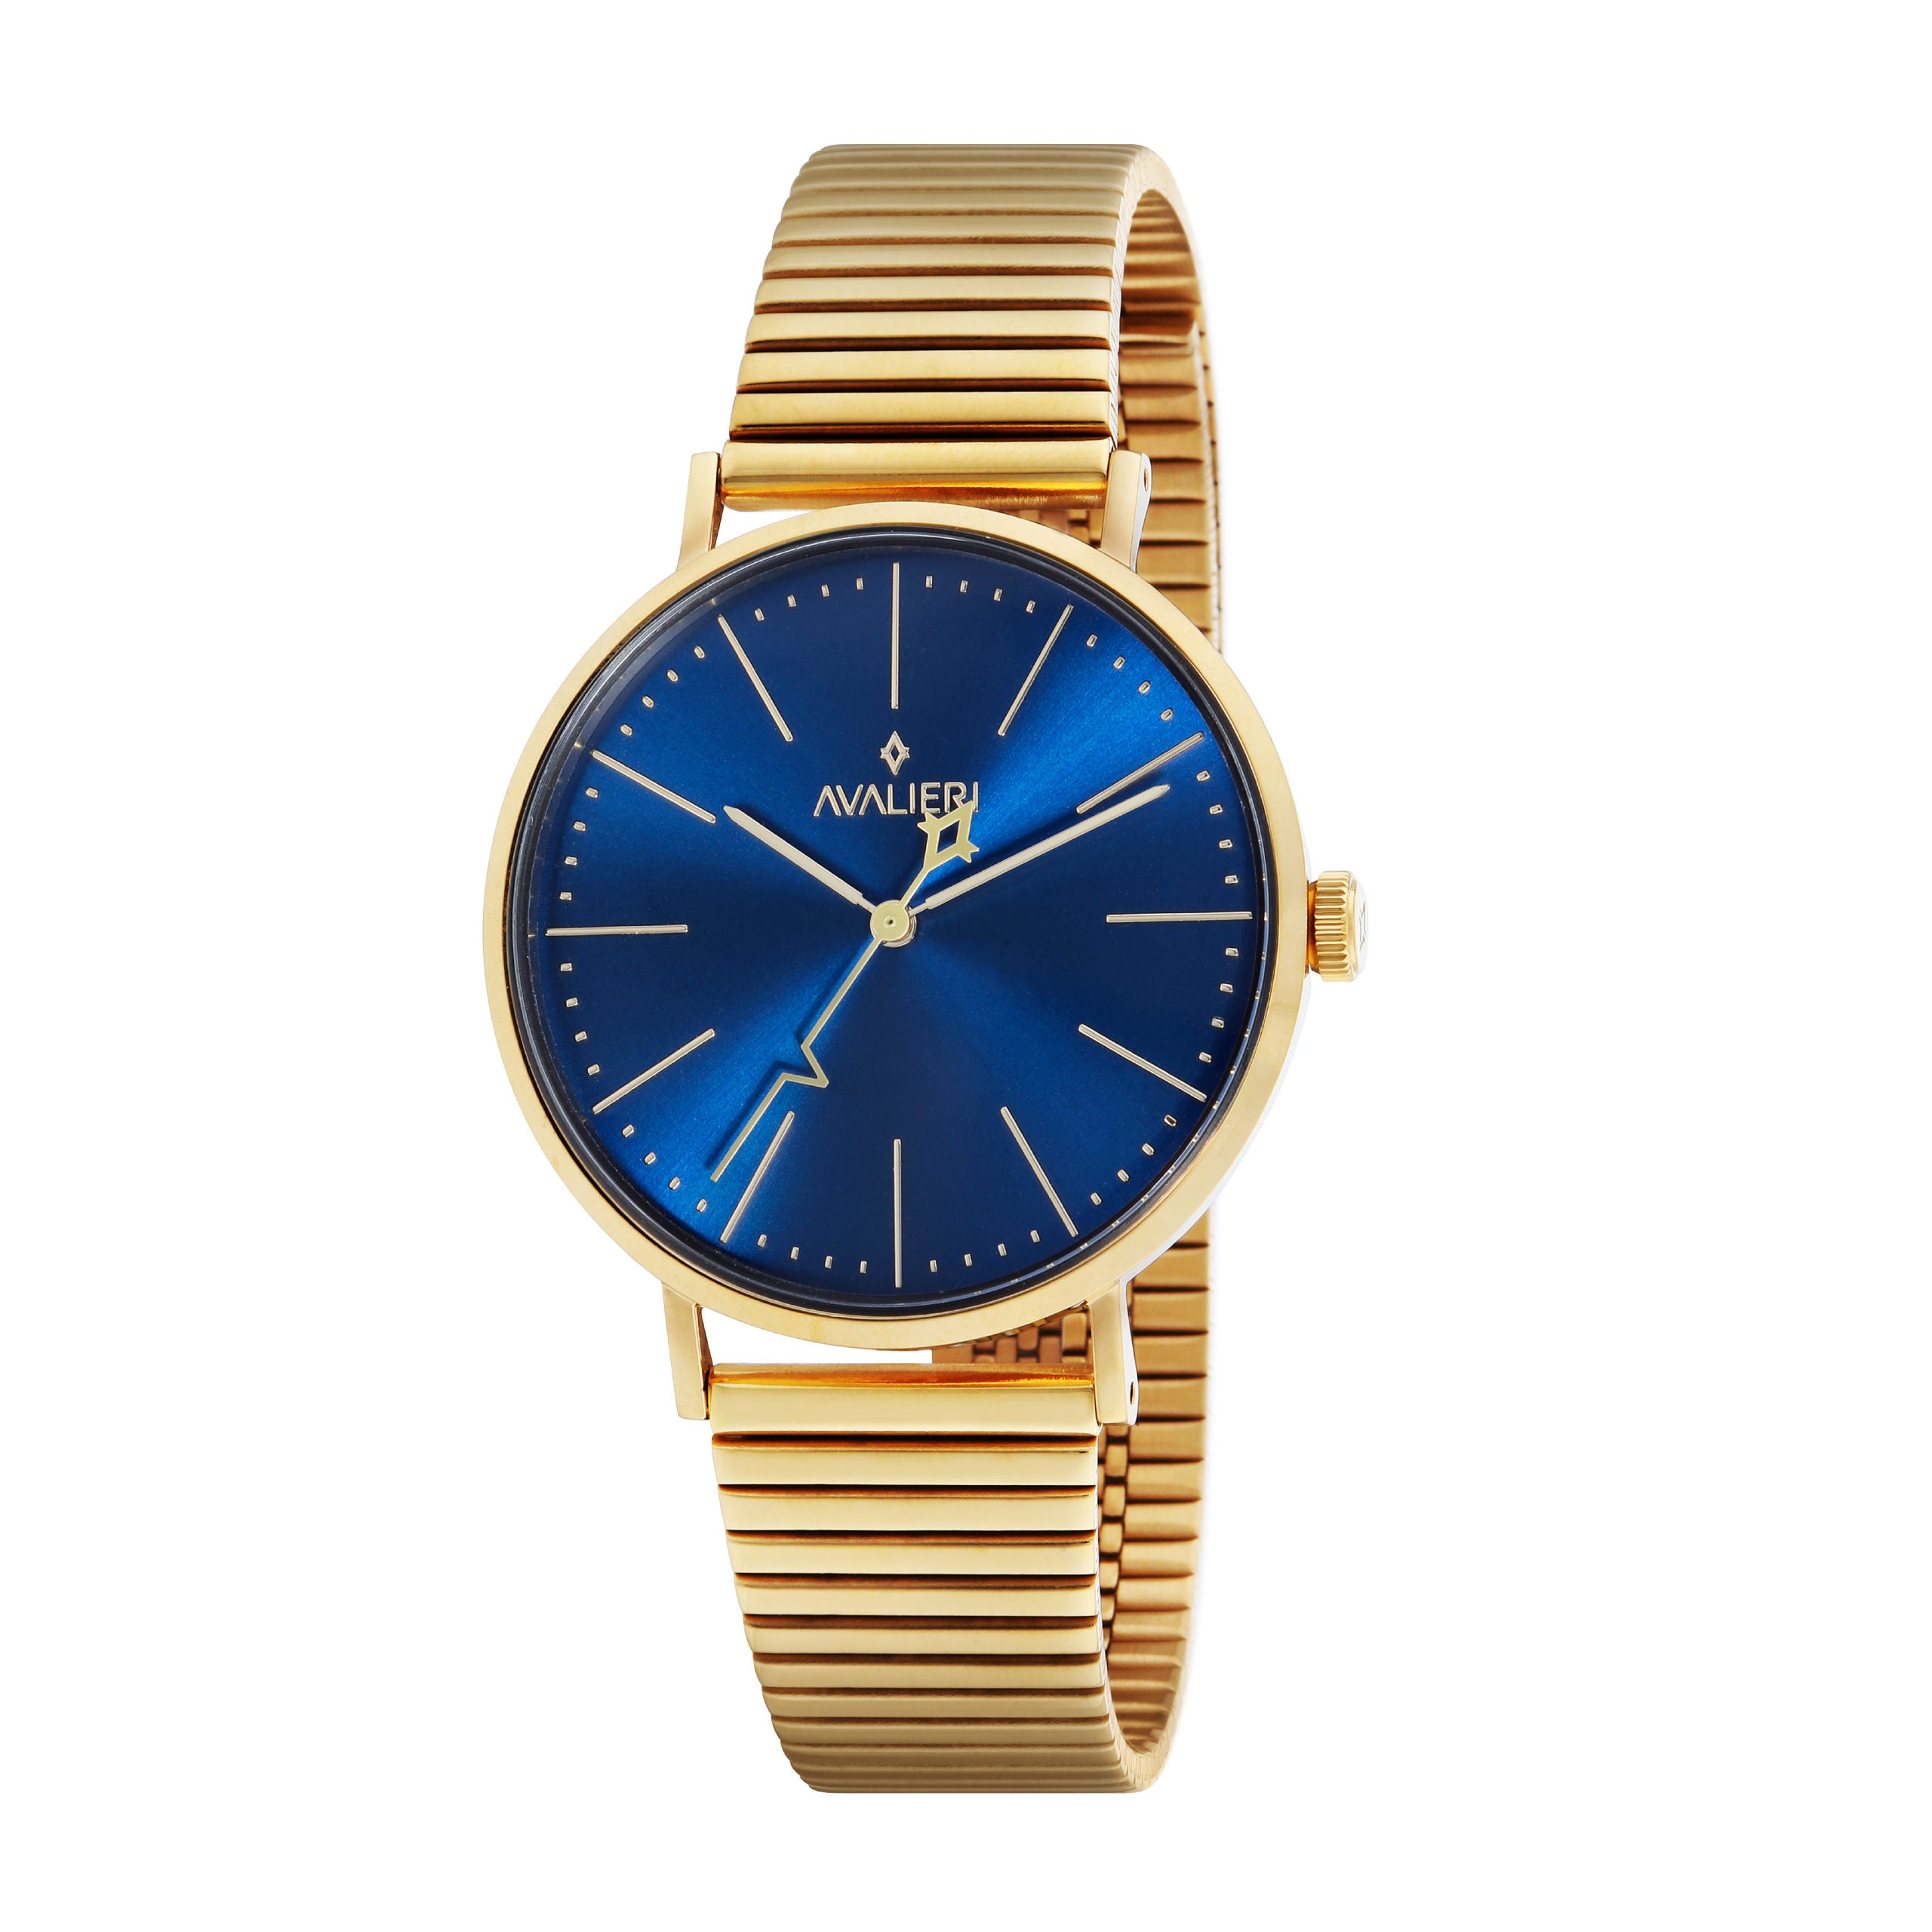 Avalieri Men's Quartz Blue Dial Watch - AV-2174B